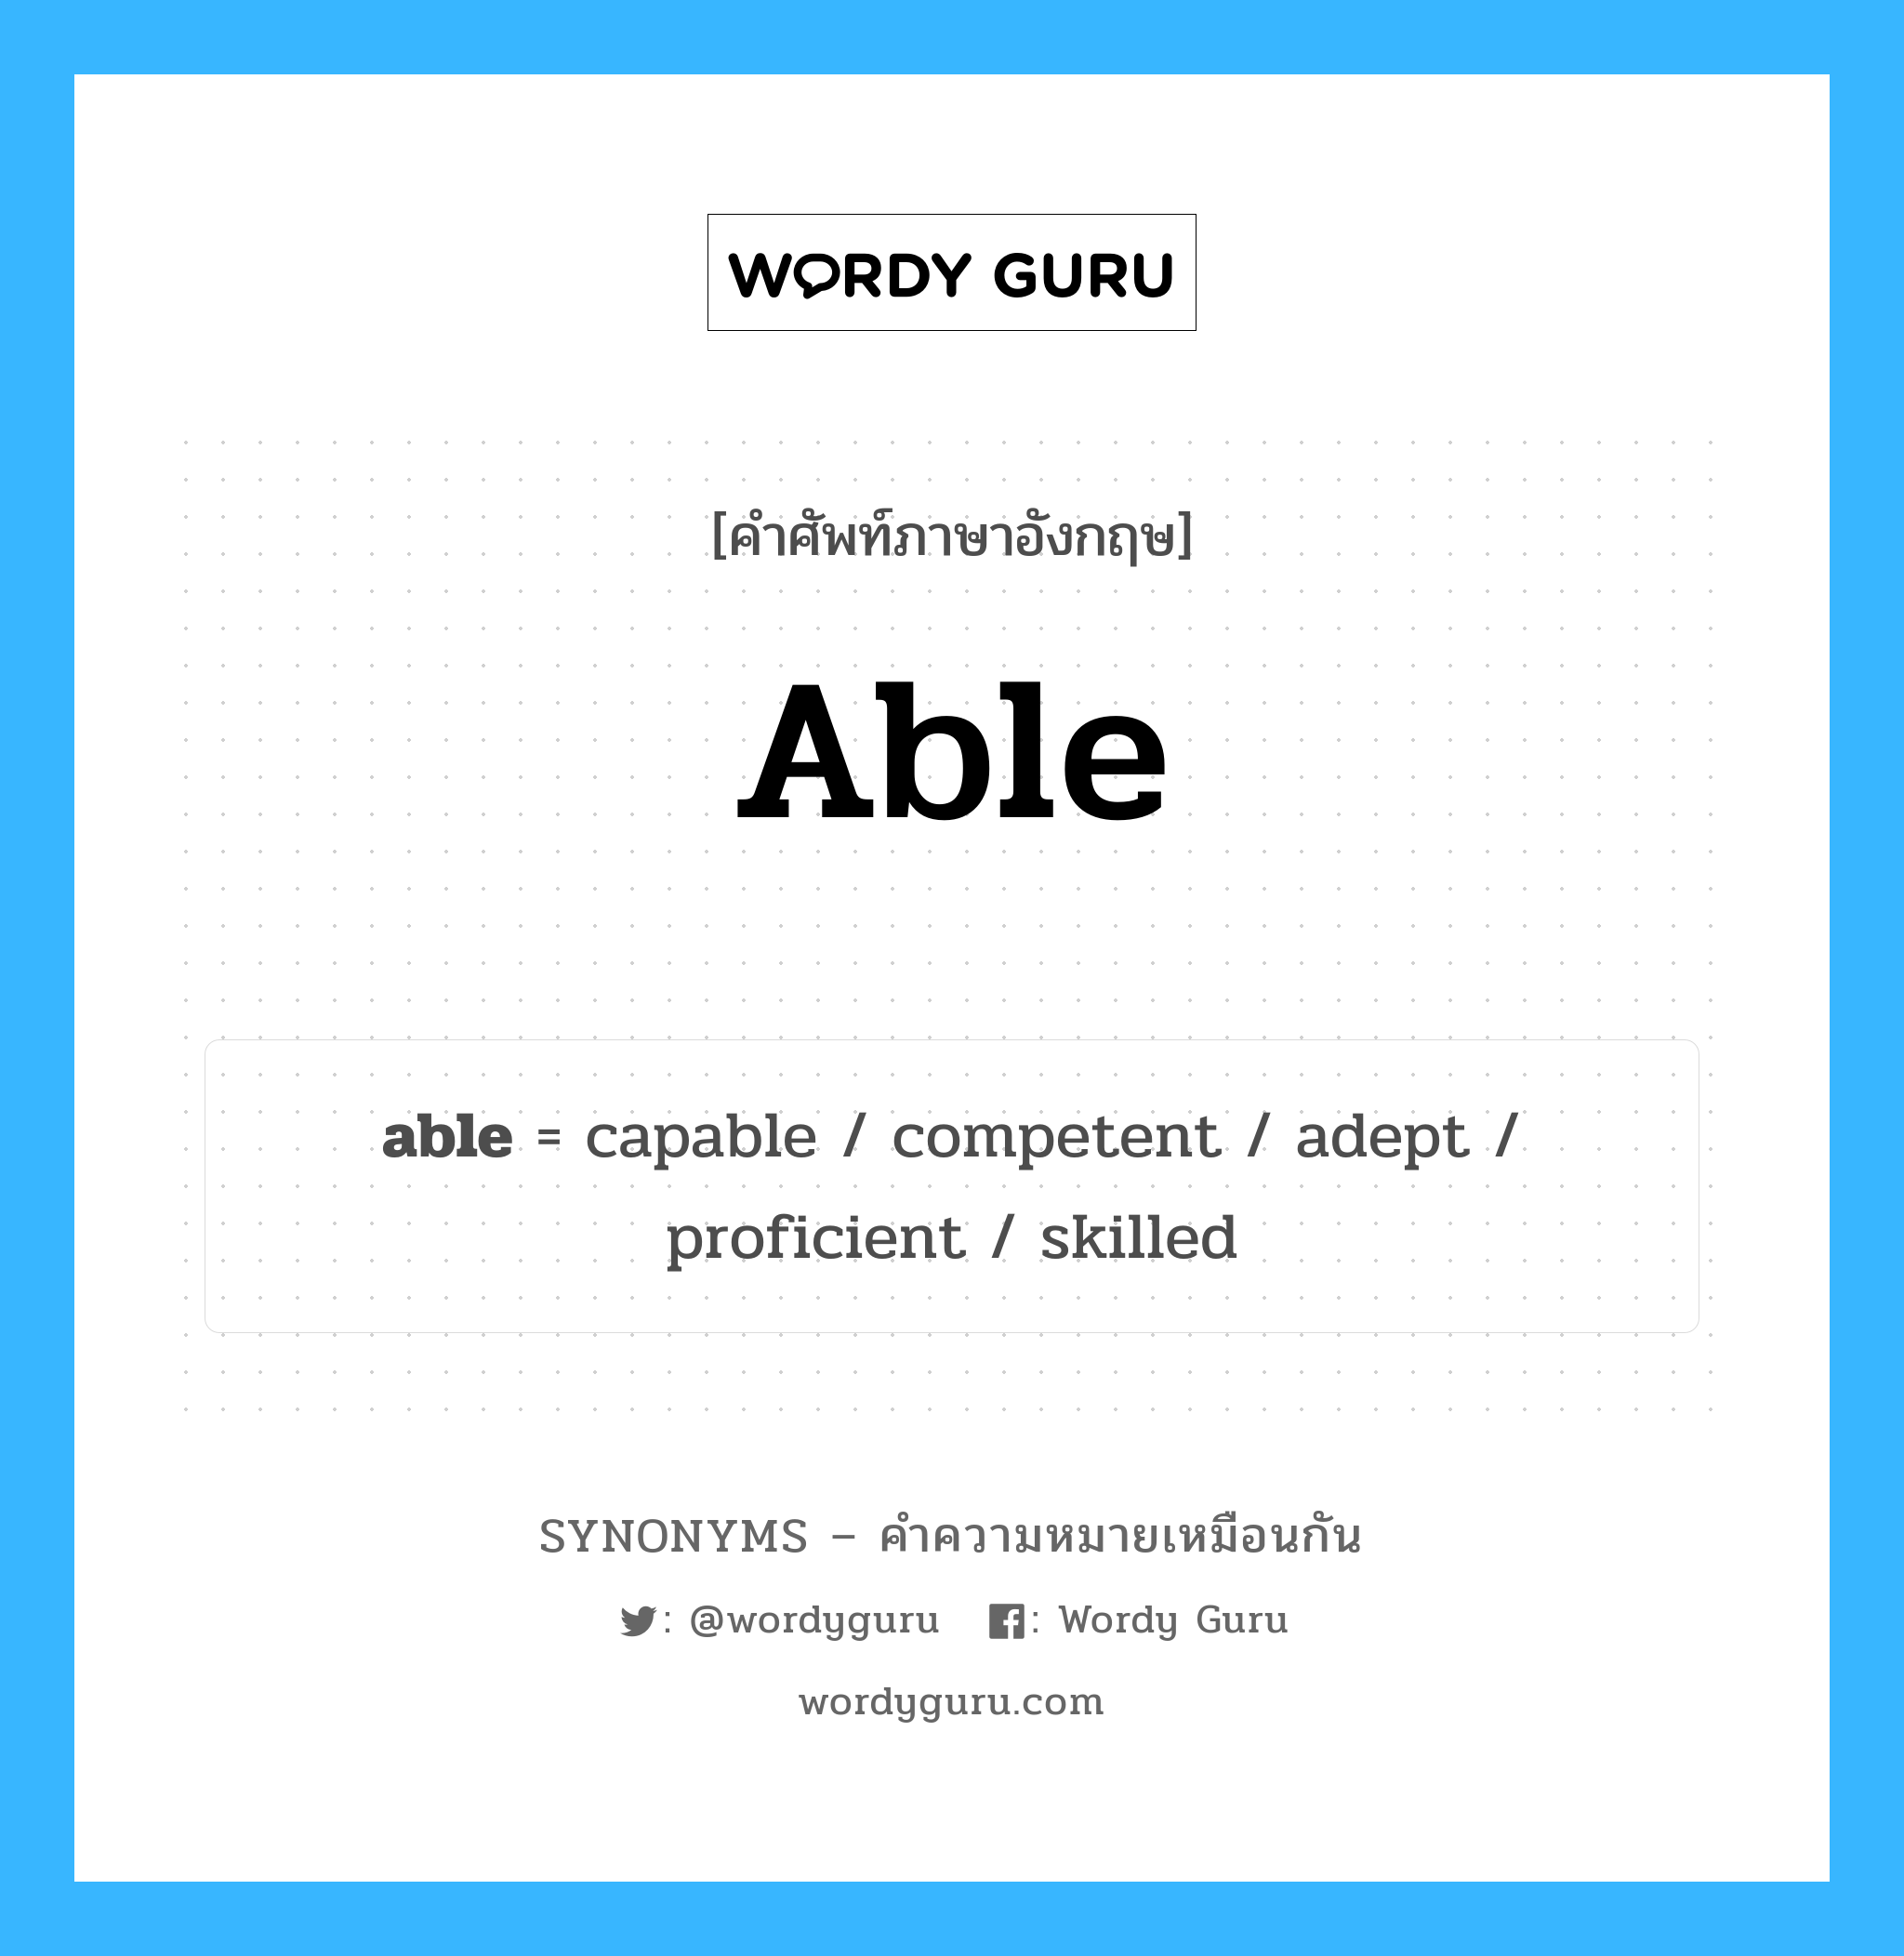 able เป็นหนึ่งใน capable และมีคำอื่น ๆ อีกดังนี้, คำศัพท์ภาษาอังกฤษ able ความหมายคล้ายกันกับ capable แปลว่า ความสามารถใน หมวด capable